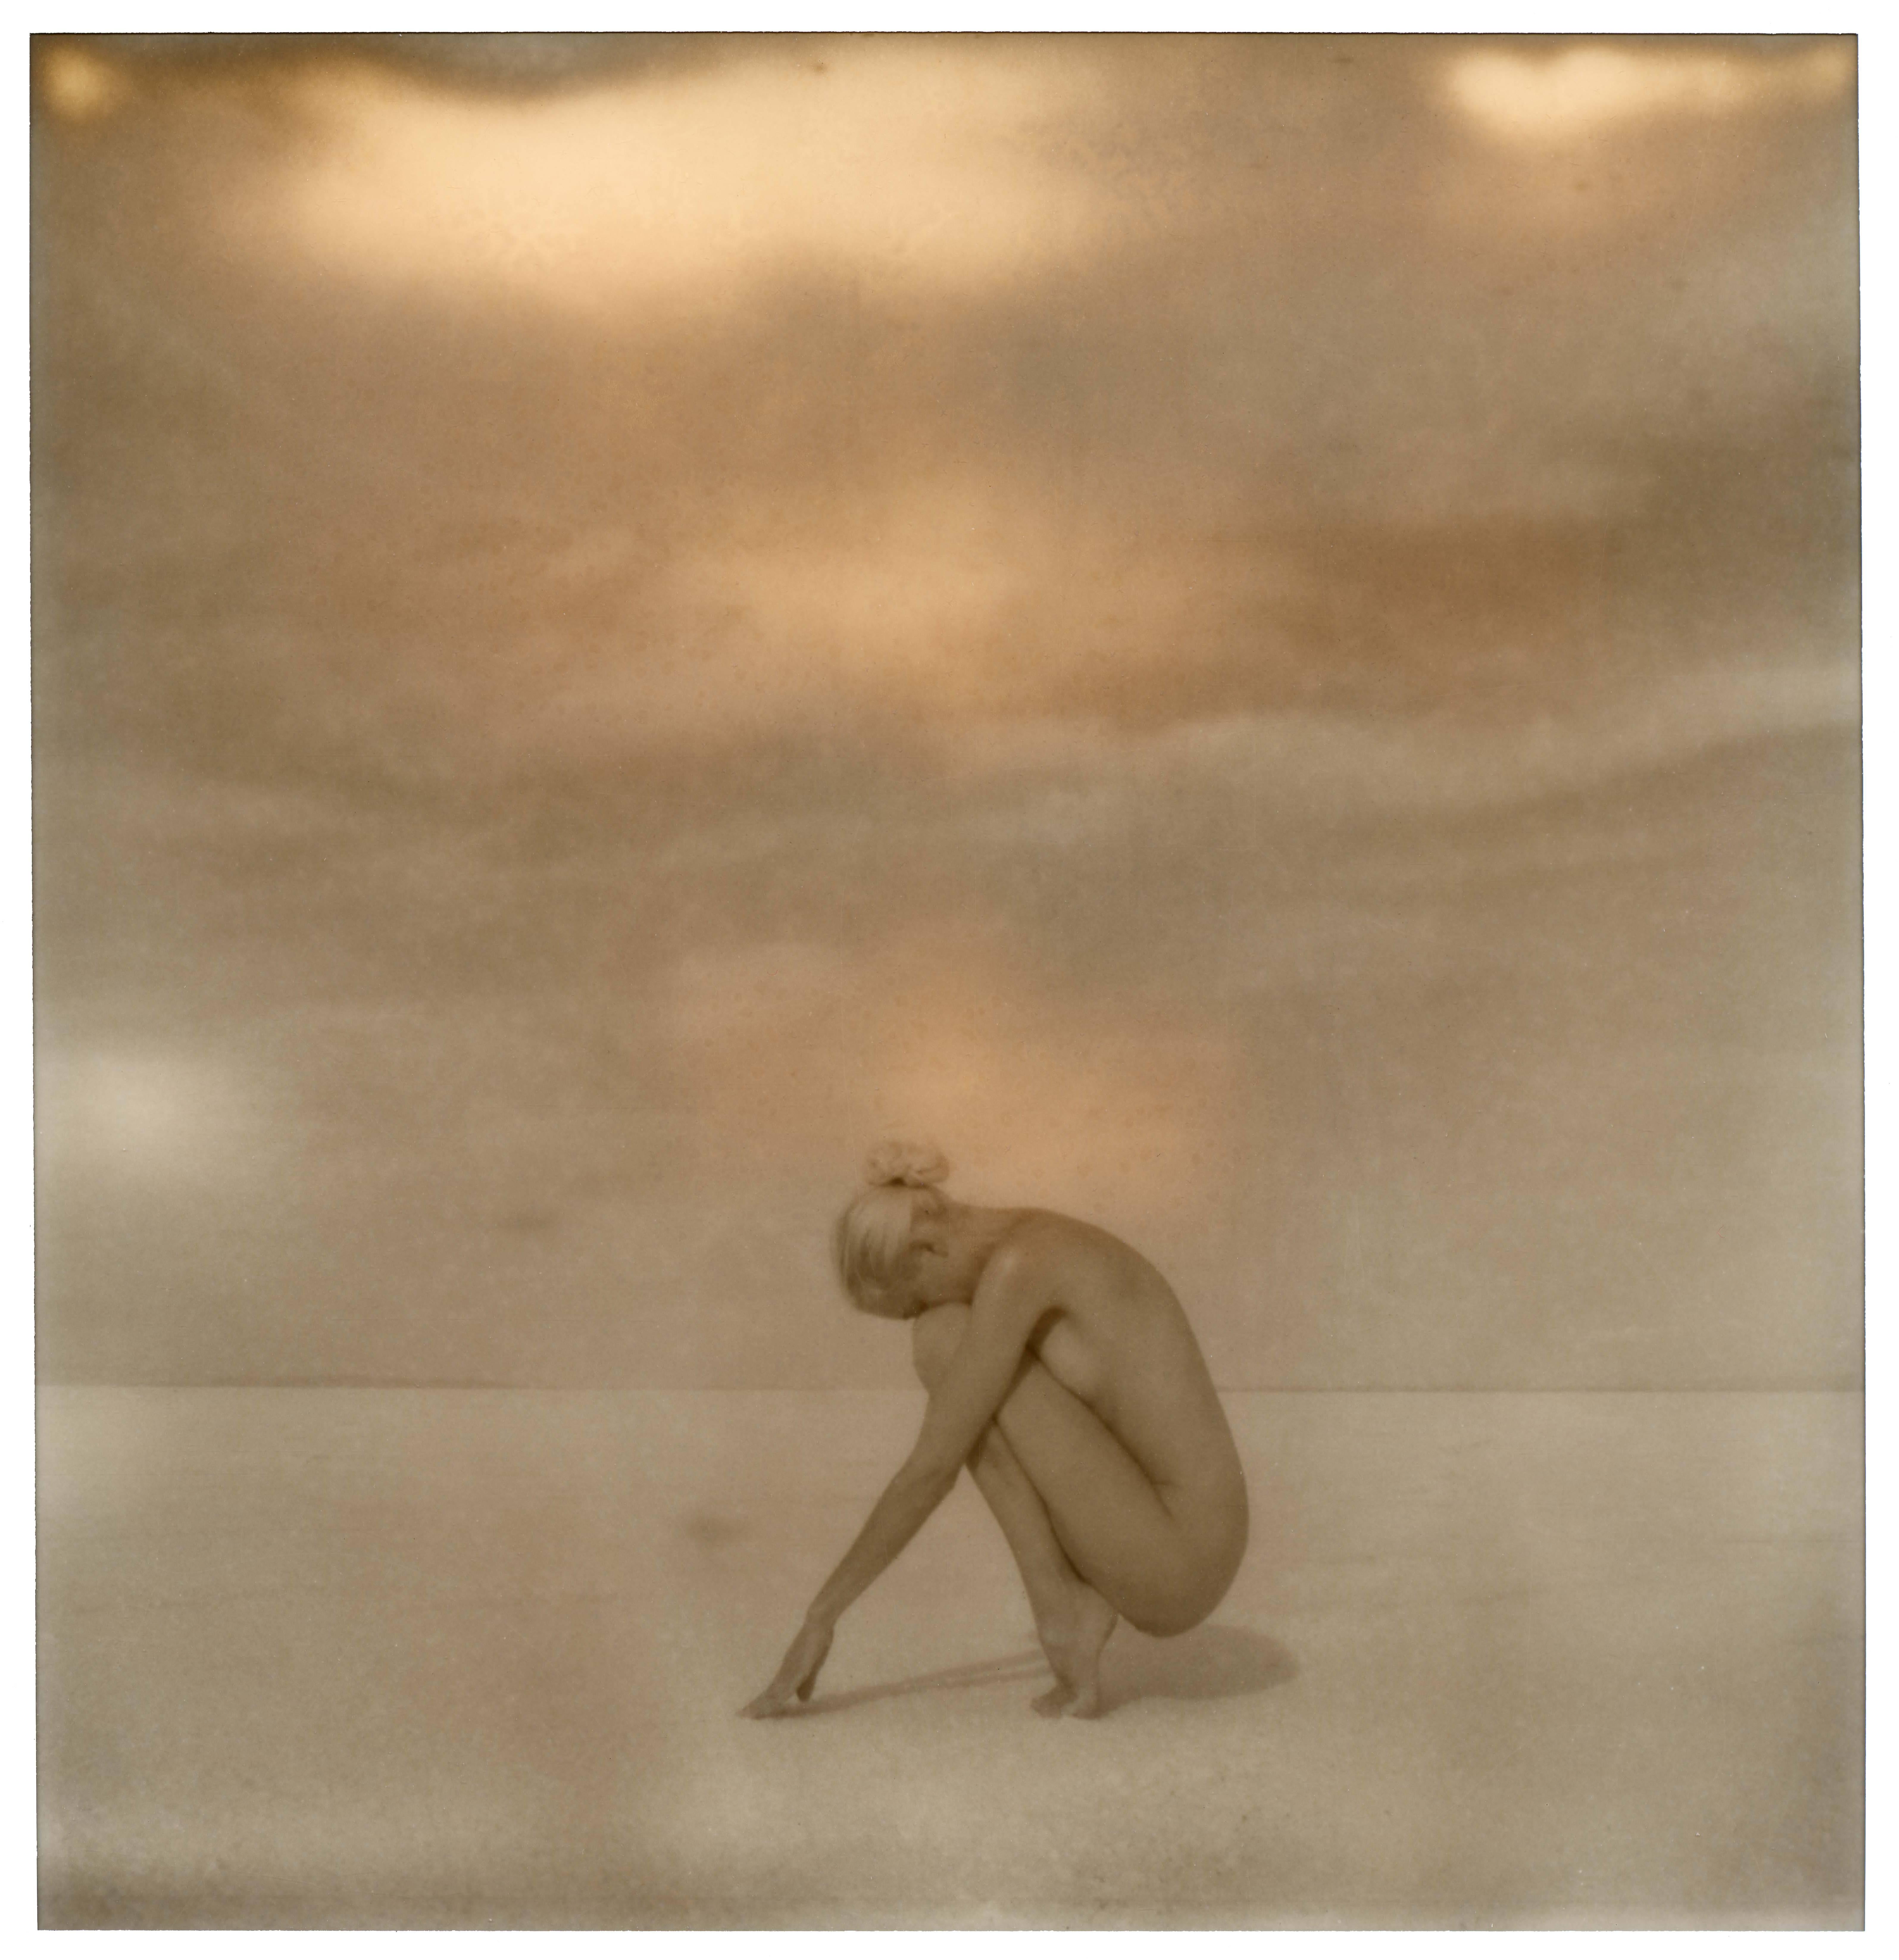 Kirsten Thys van den Audenaerde Landscape Photograph - Salt on my Skin - 50x50cm - Polaroid, Contemporary, 21st Century